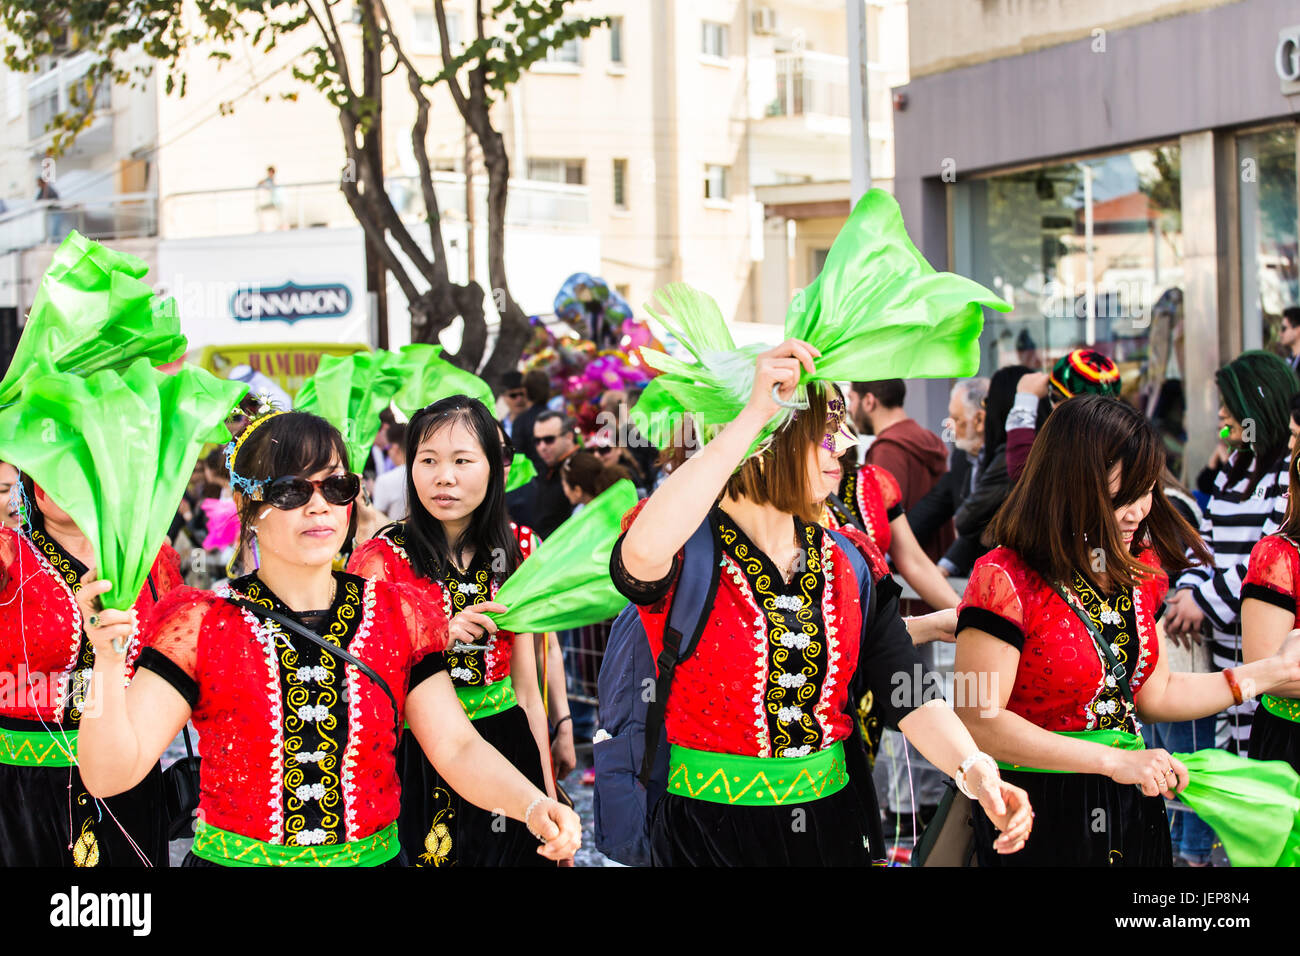 LIMASSOL, Cipro - 26 febbraio: Grand sfilata di carnevale - un misterioso popolo di tutte le etã , sesso e nazionalità in colorati costumi durante la str Foto Stock